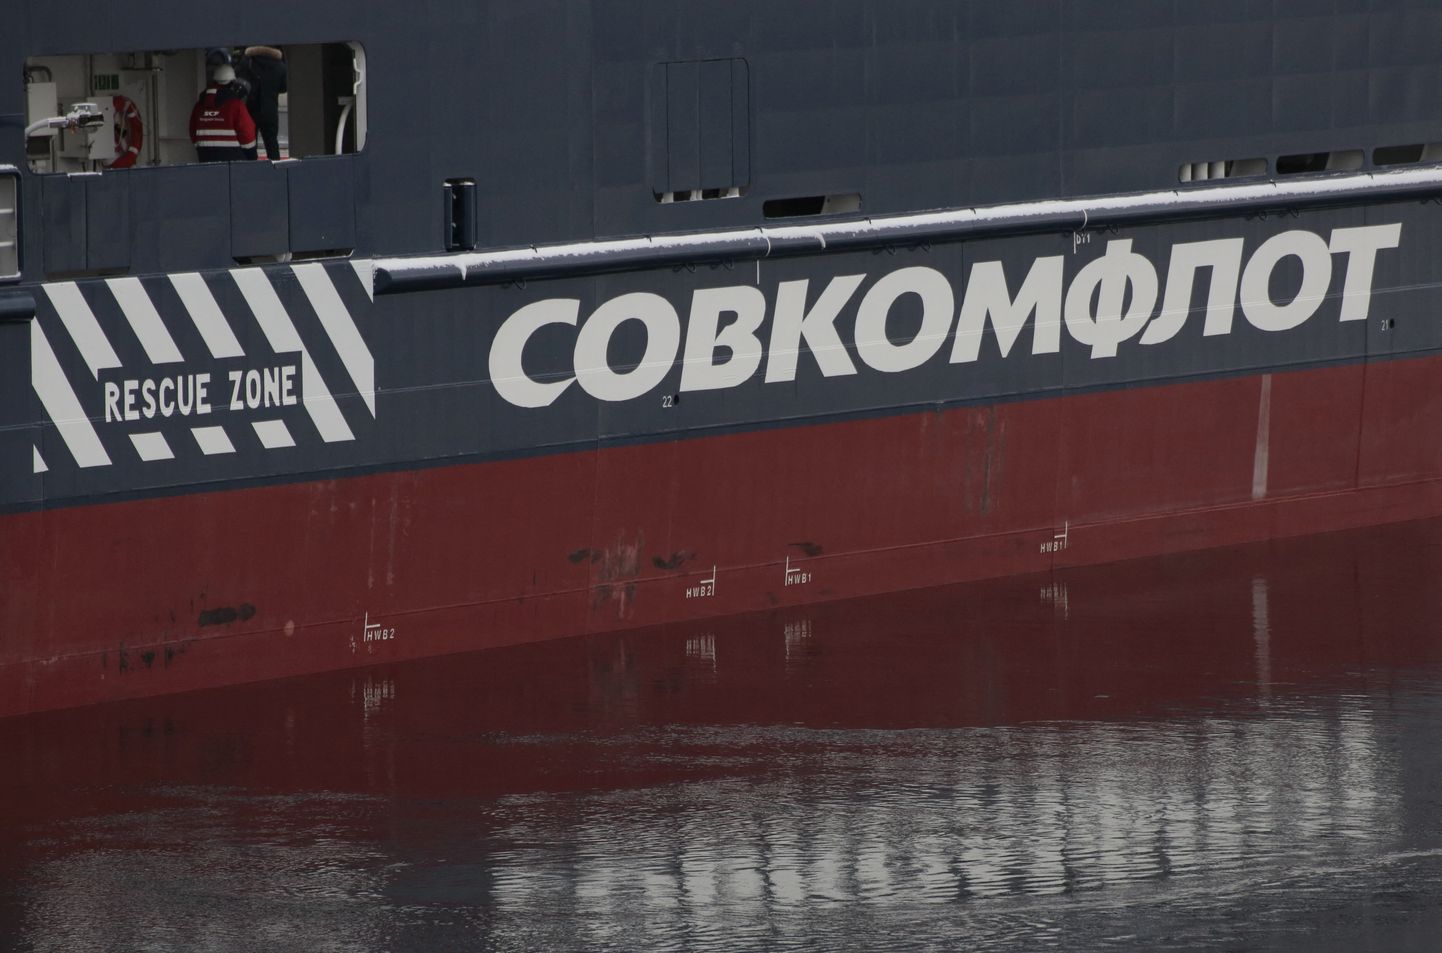 Venemaa laevakompanii Sovcomflot tegeleb nii kaubavedude kui jäämurdmisega REUTERS/Anton Vaganov/File Photo